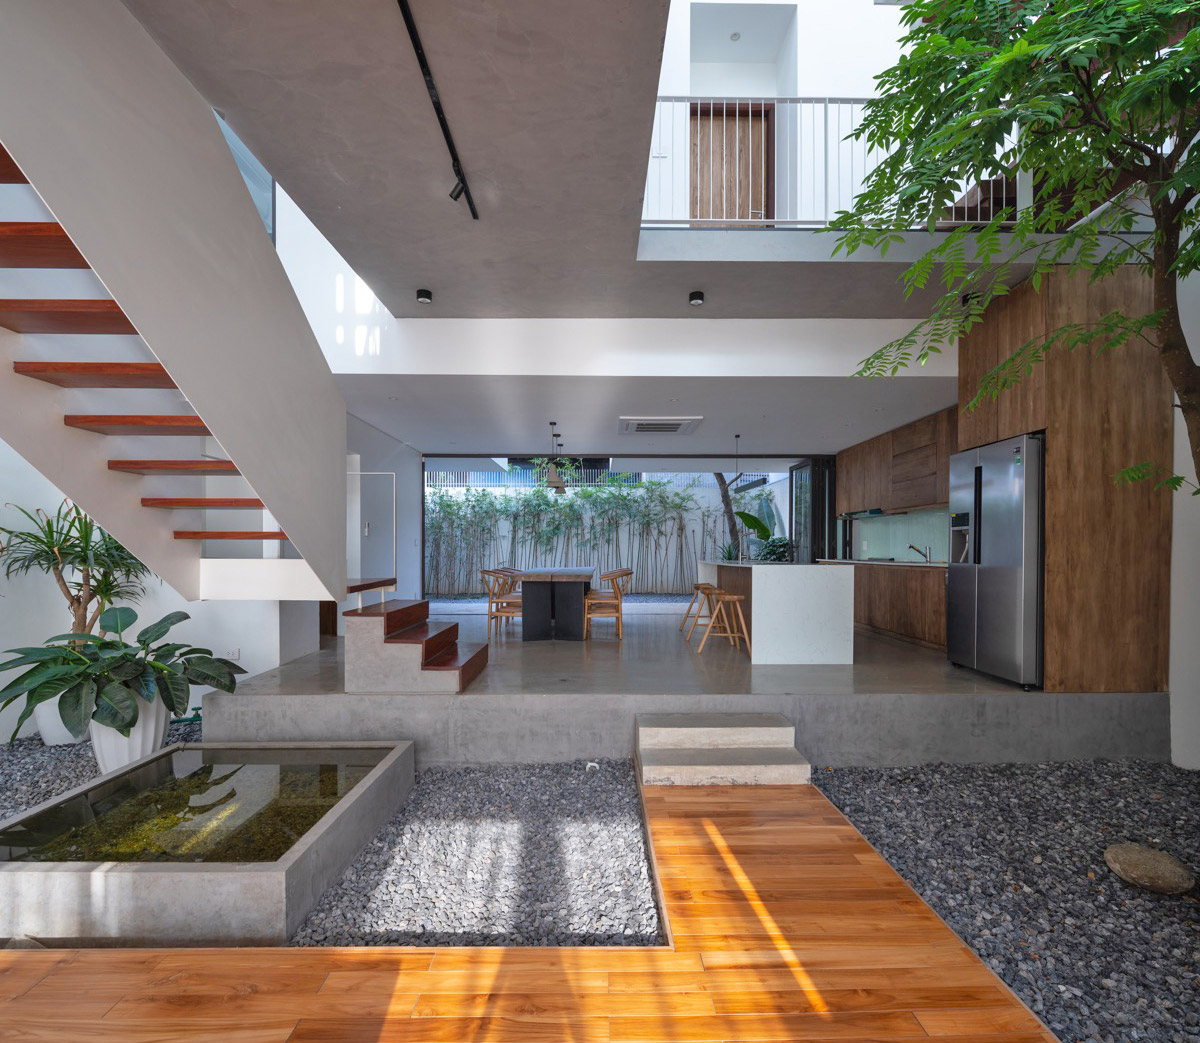 Diseño de casa de planta abierta con espacios de vida familiar conectados en todos los pisos